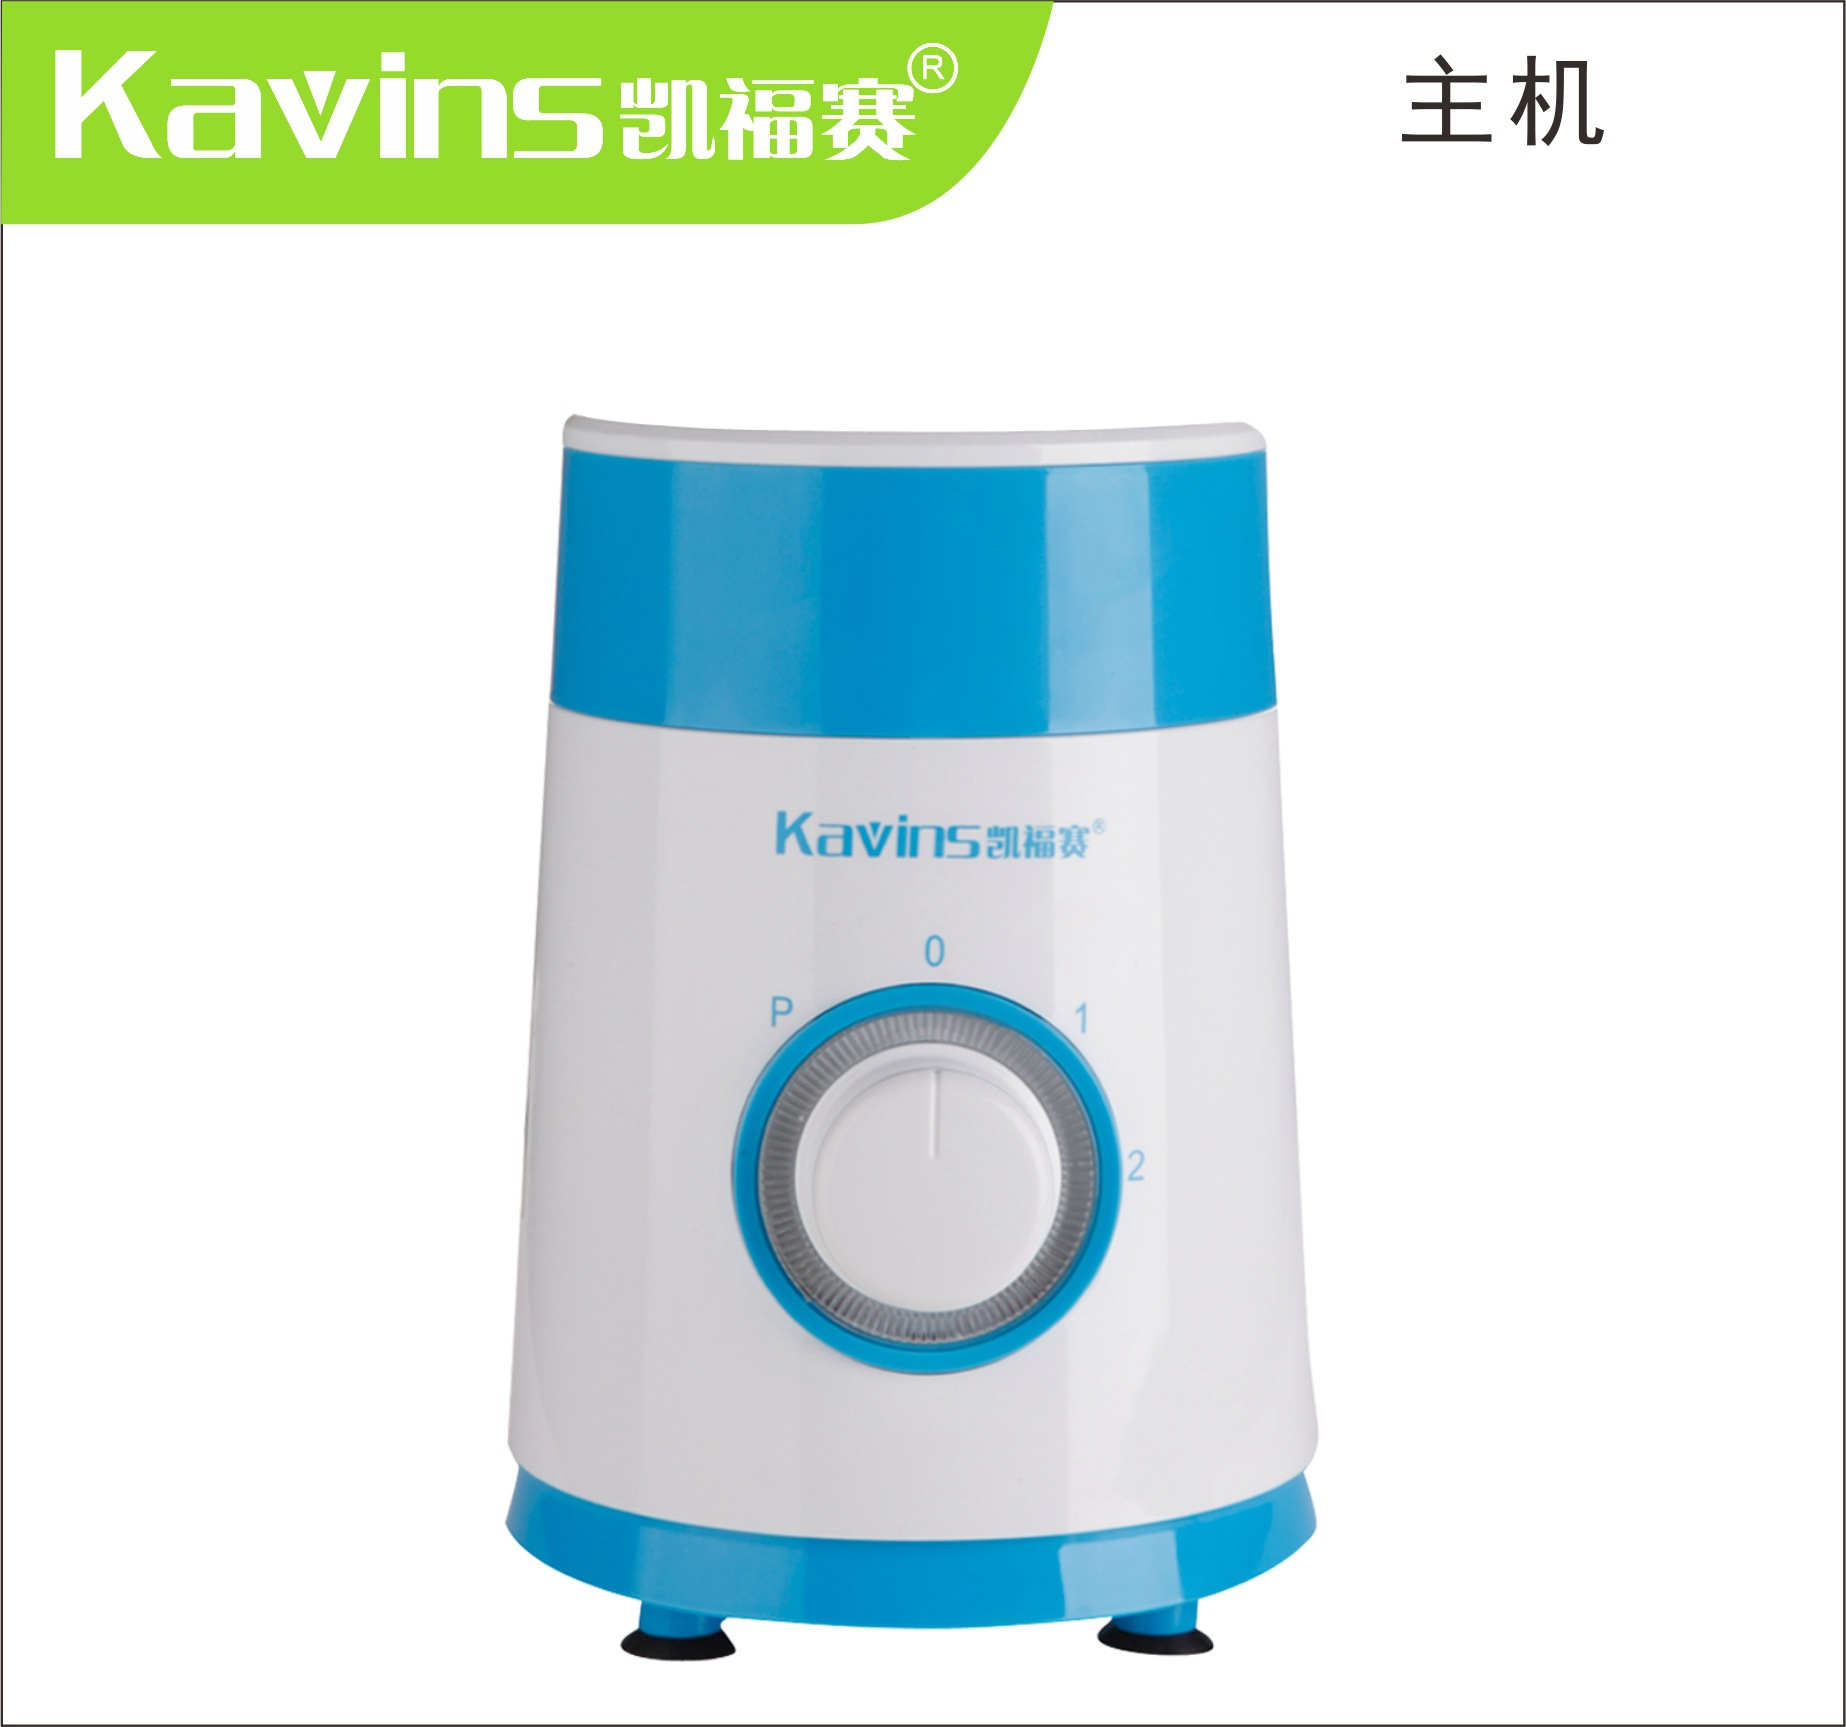 凯福赛生产多功能食品加工机料理机榨汁机破壁机搅拌机可印logo